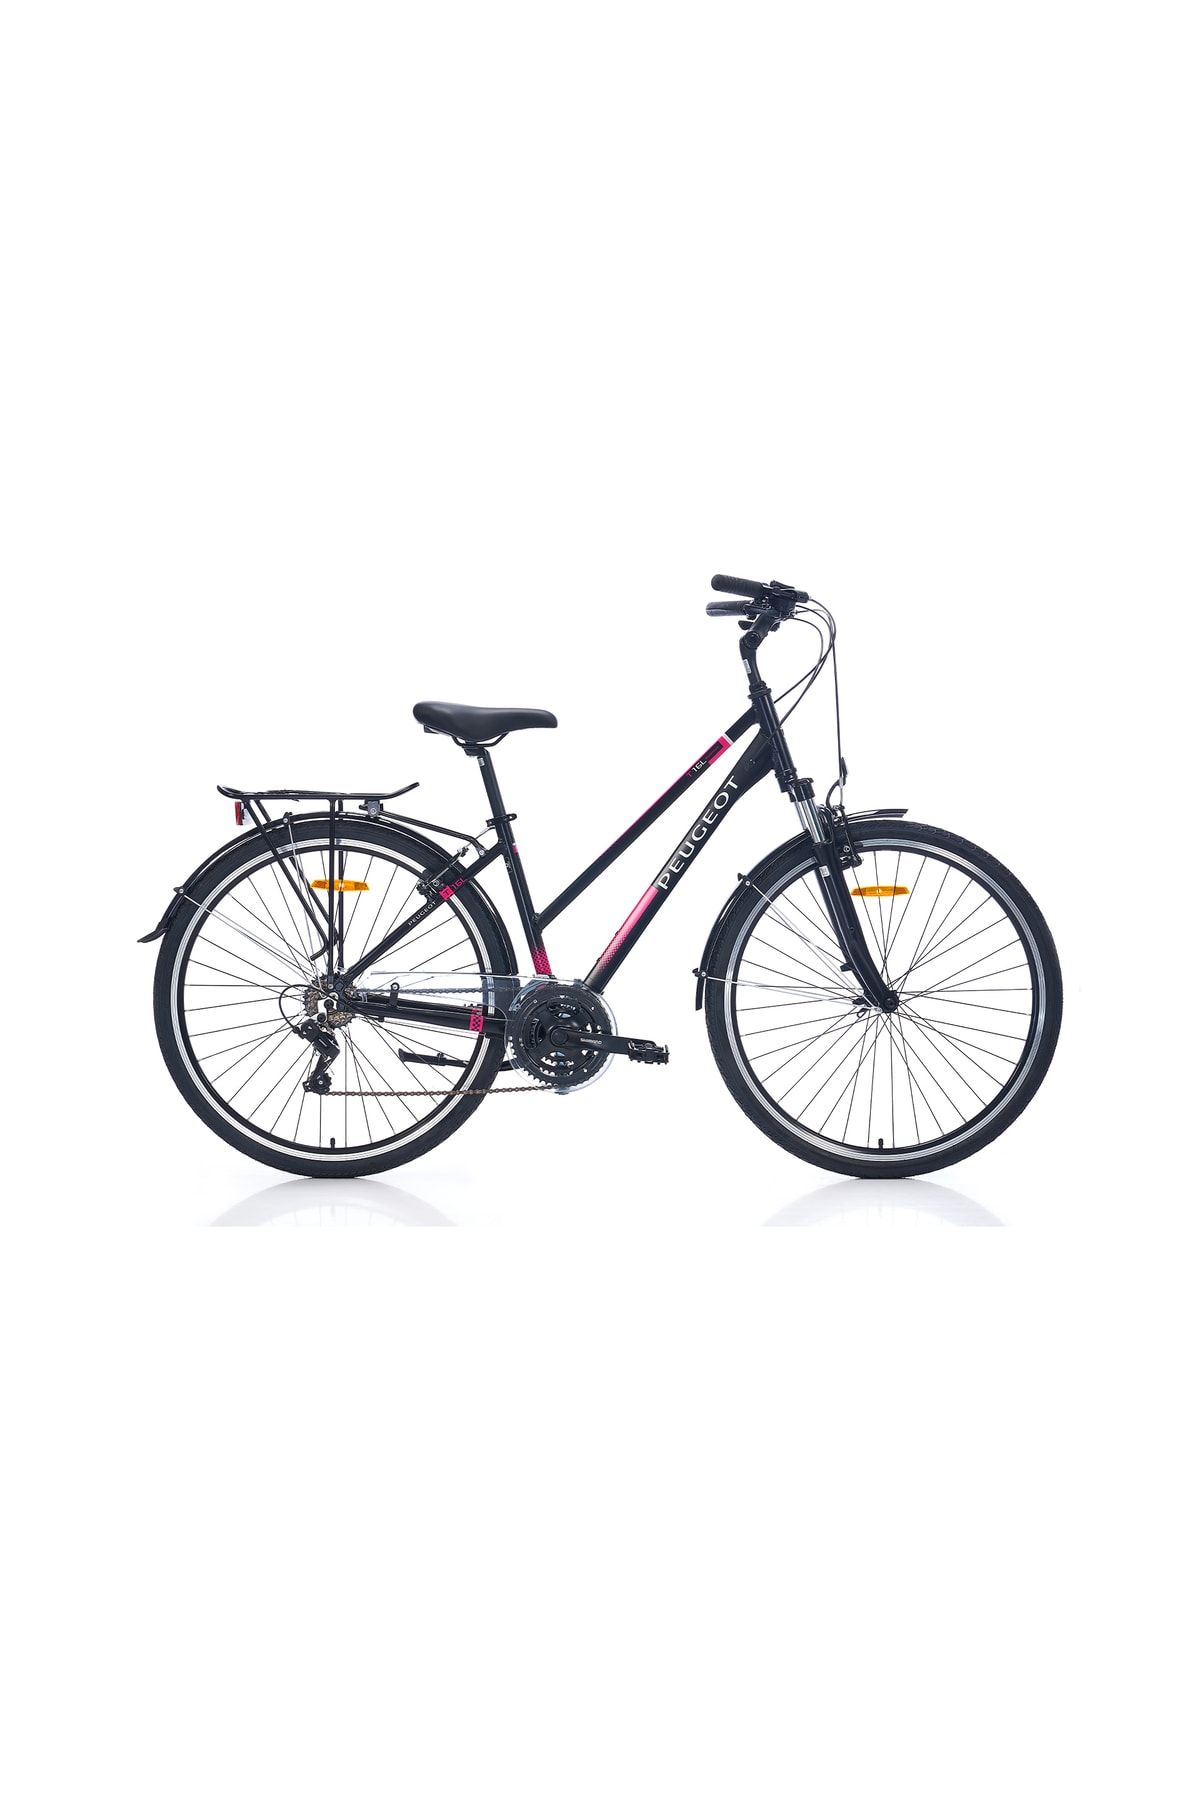 Peugeot Bisiklet T16-l 400h 28" 21-v Vb Siyah-pembe Şehir Bisikleti